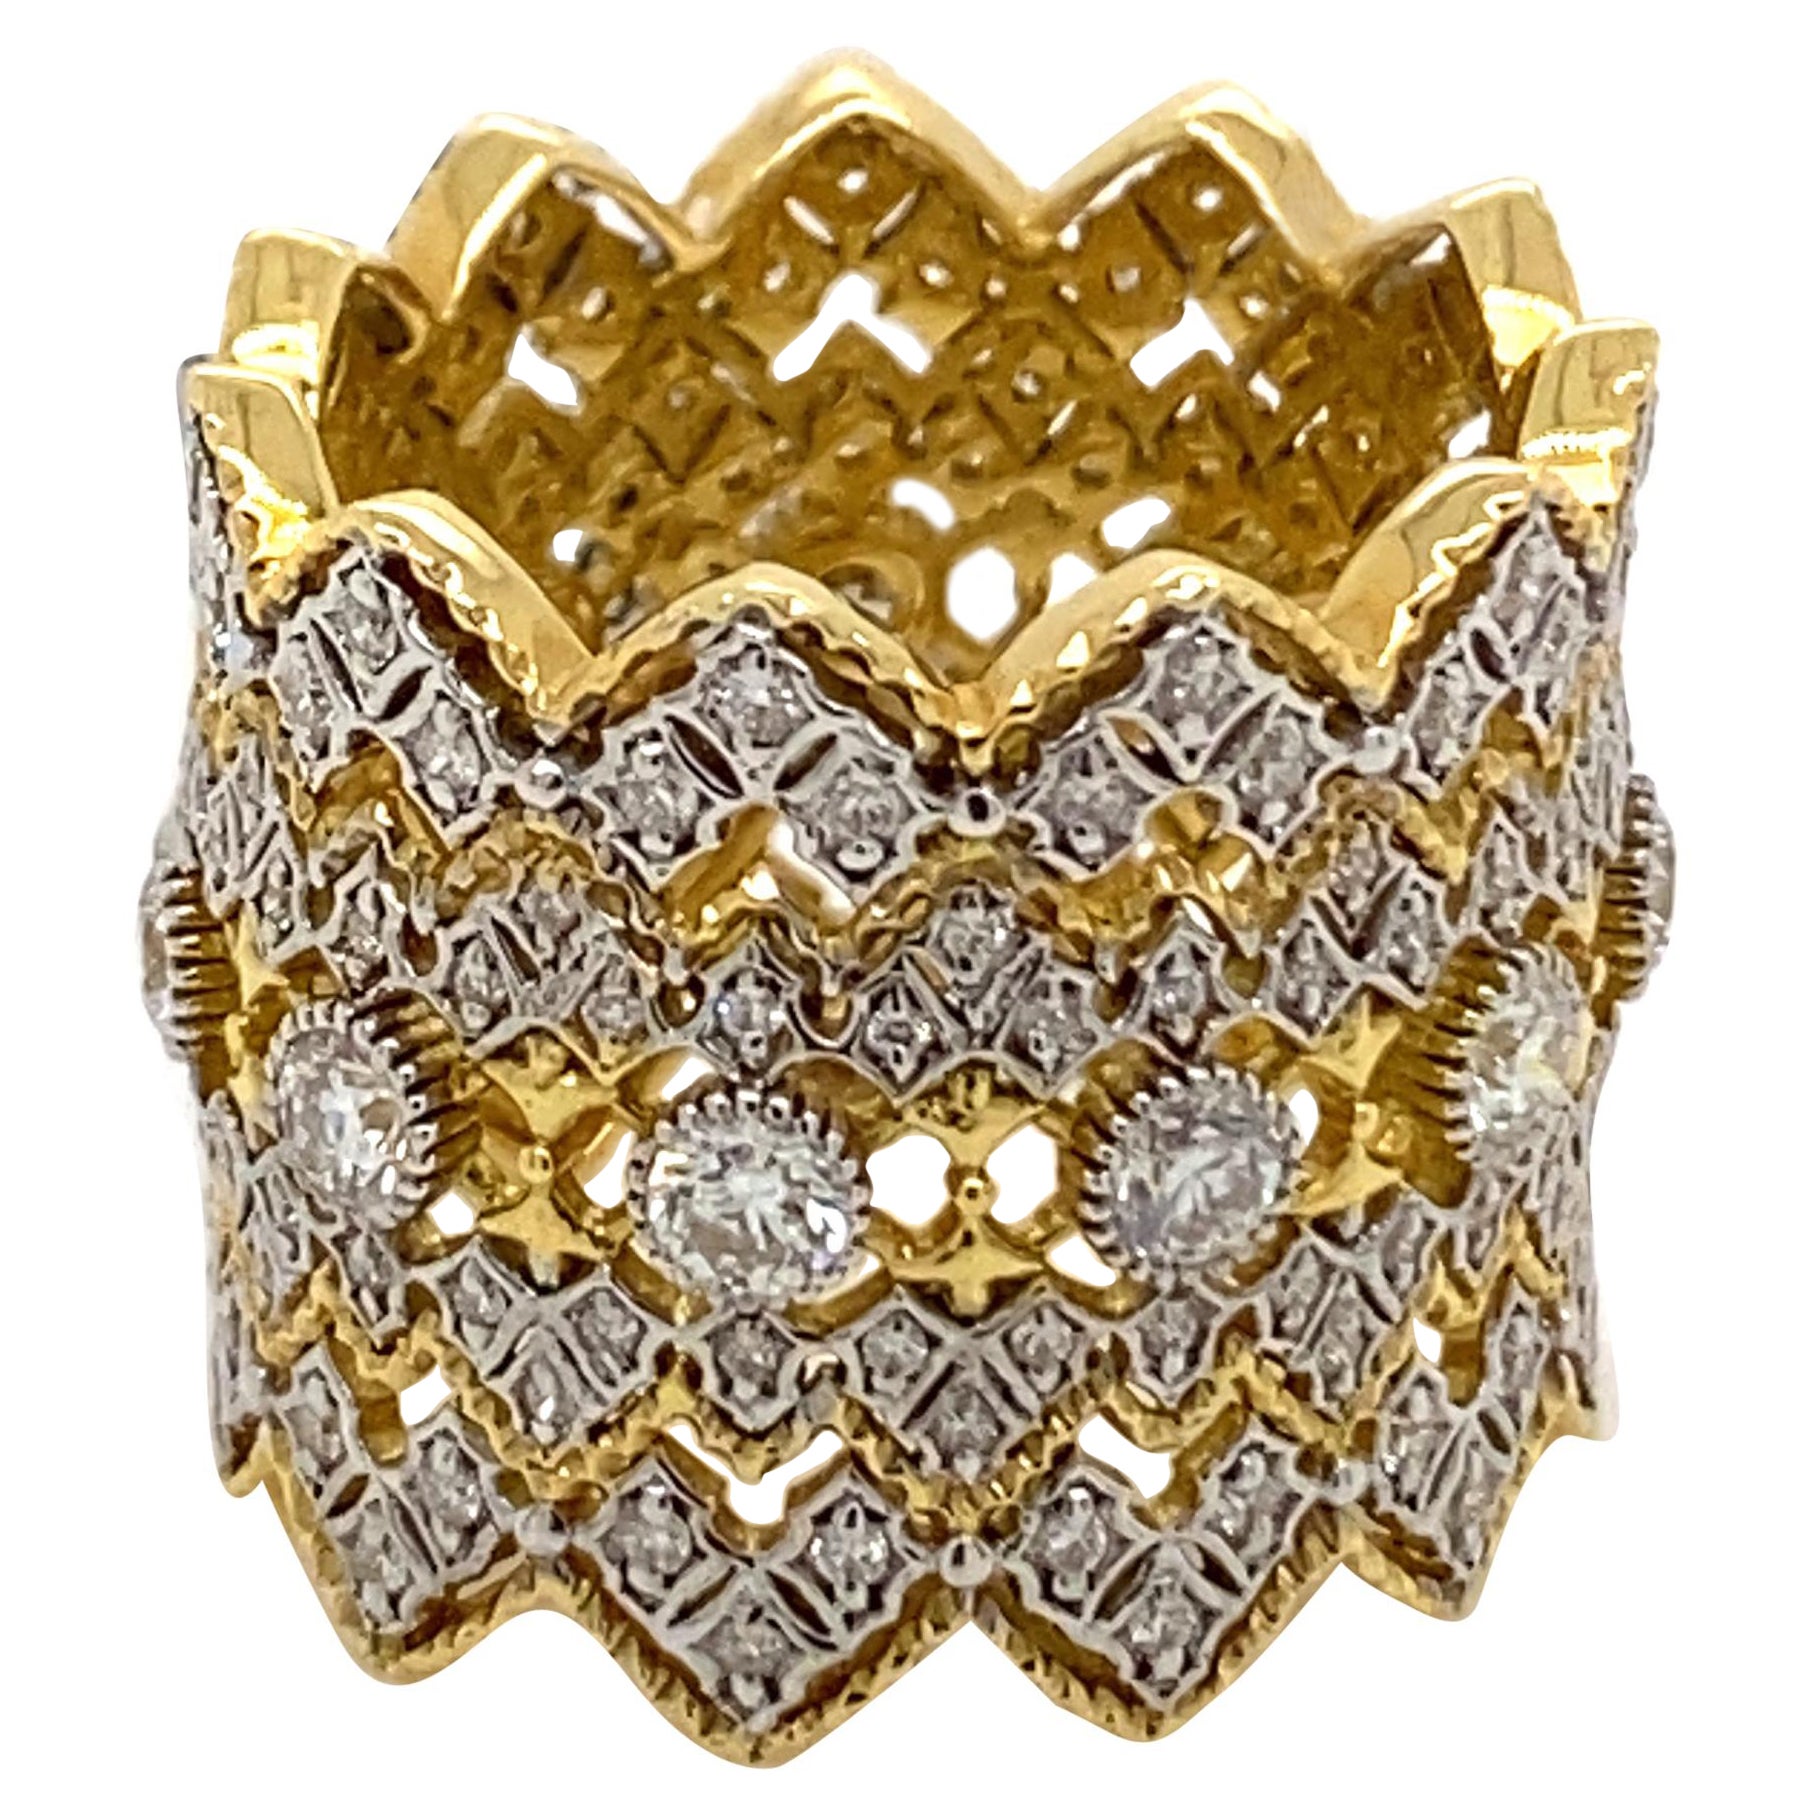 1.38ct Victorian Style Diamond Ring 18 Karat Yellow and White Gold Handmade